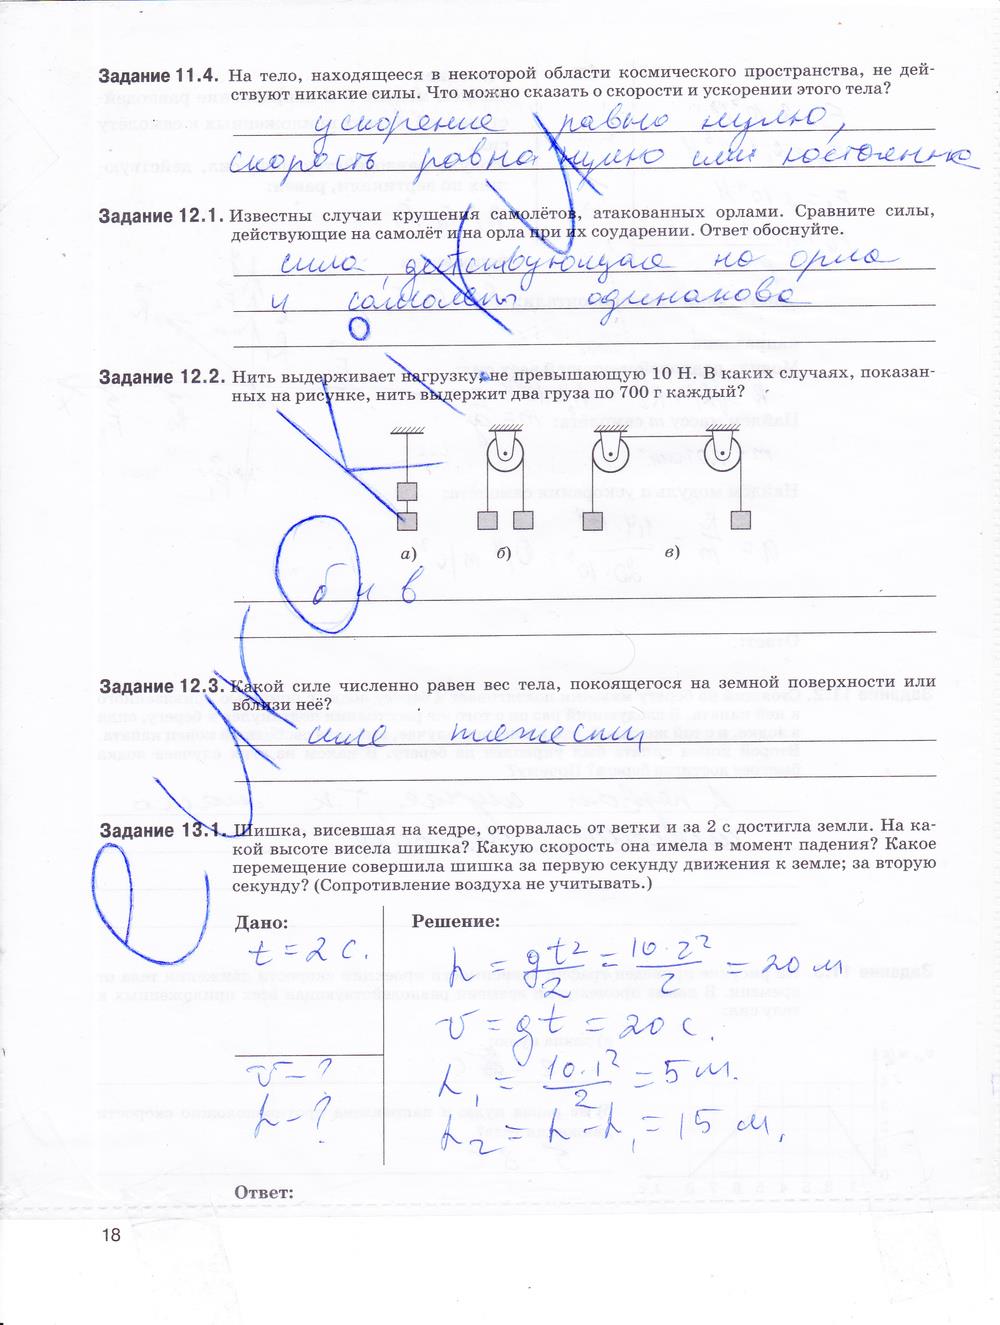 гдз 9 класс рабочая тетрадь страница 18 физика Гутник, Власова